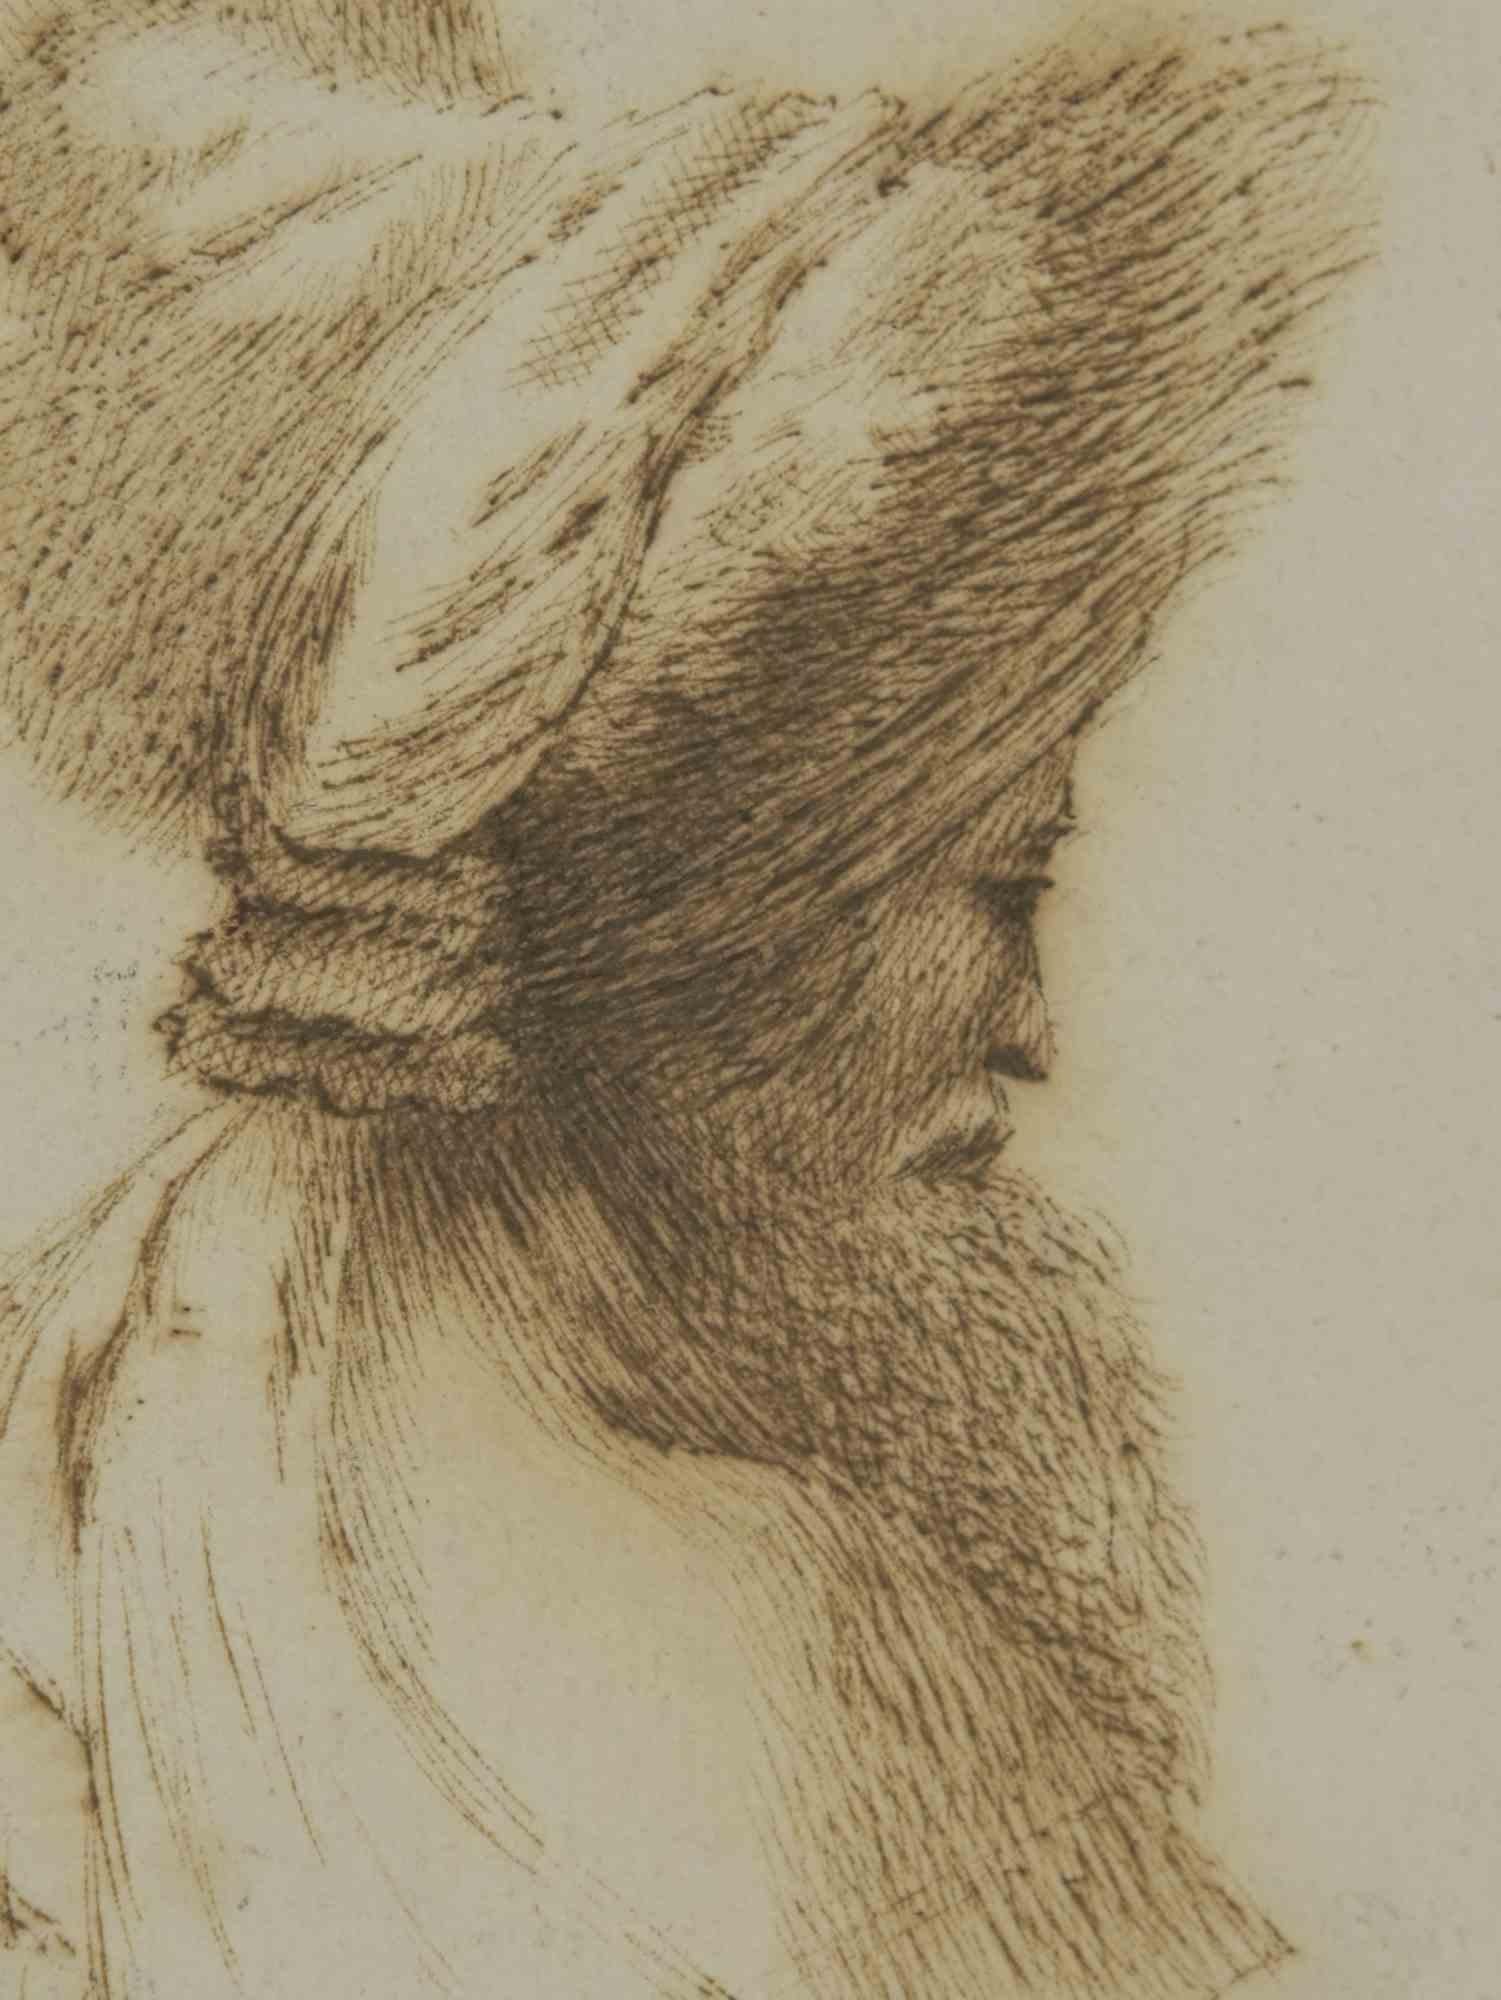 Profil d'un homme oriental - Gravure - 17e siècle  - Print de Rembrandt Harmenszoon van Rijn